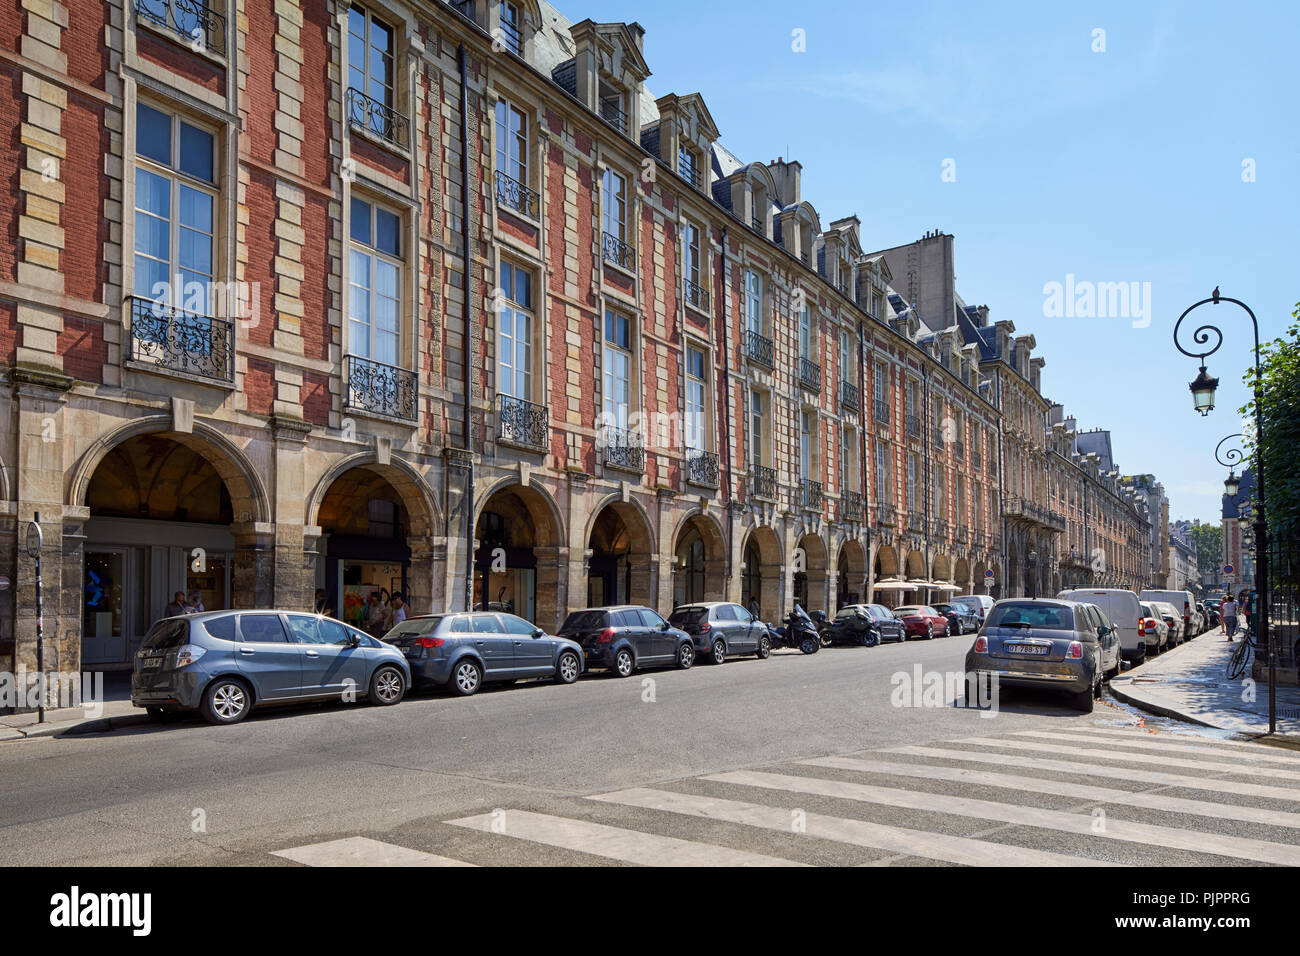 Place des Vosges, the oldest planned square in Paris, Marais district, Paris, France, Europe Stock Photo